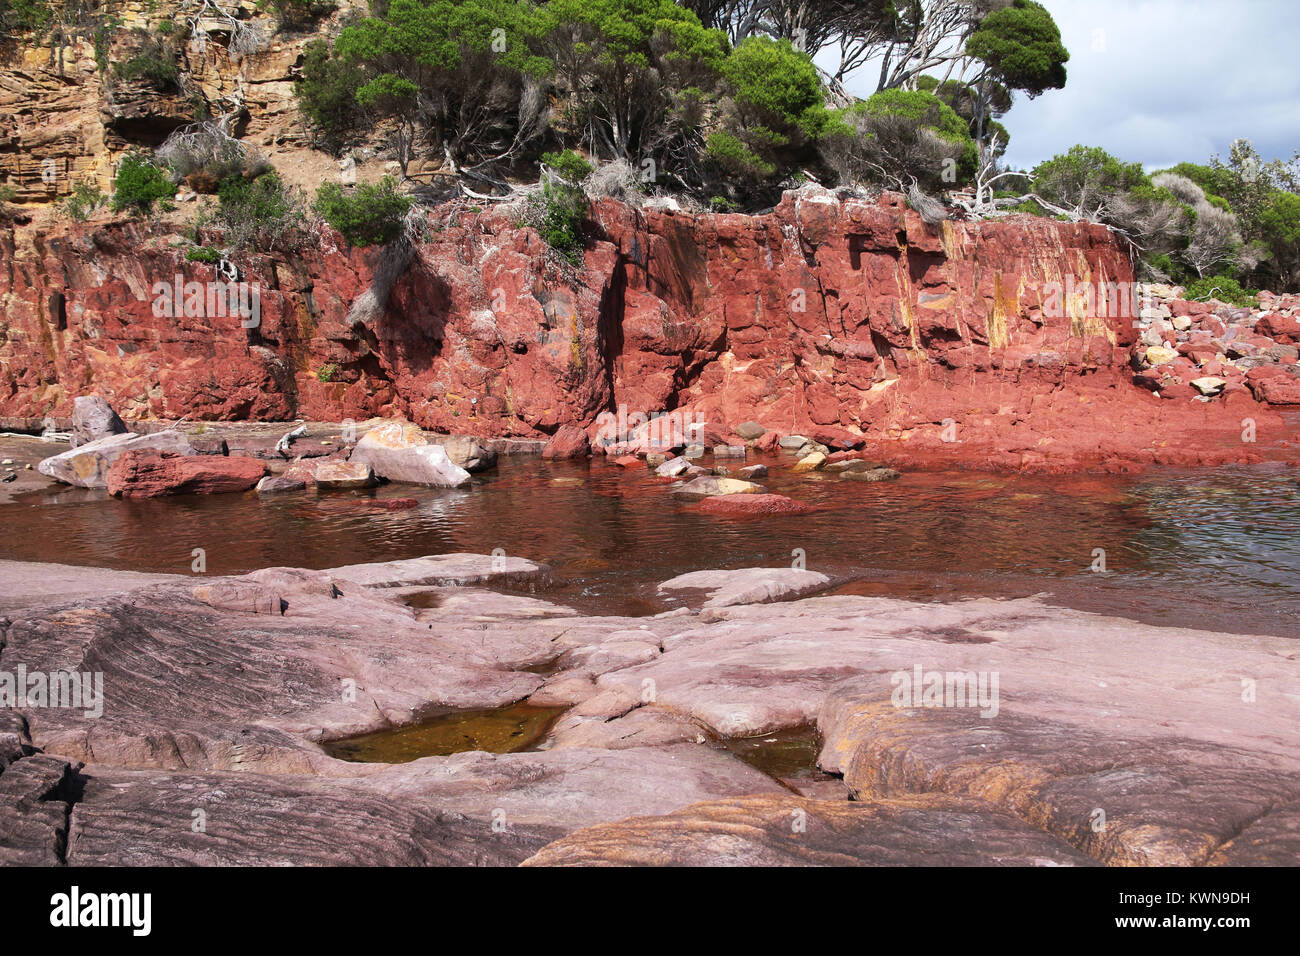 Alte Red Rock formen Felswand in der Nähe von Bittangabee Bucht im Ben Boyd Nationalpark, Eden, NSW, Australien. Reise Fotografie Australiens. Stockfoto